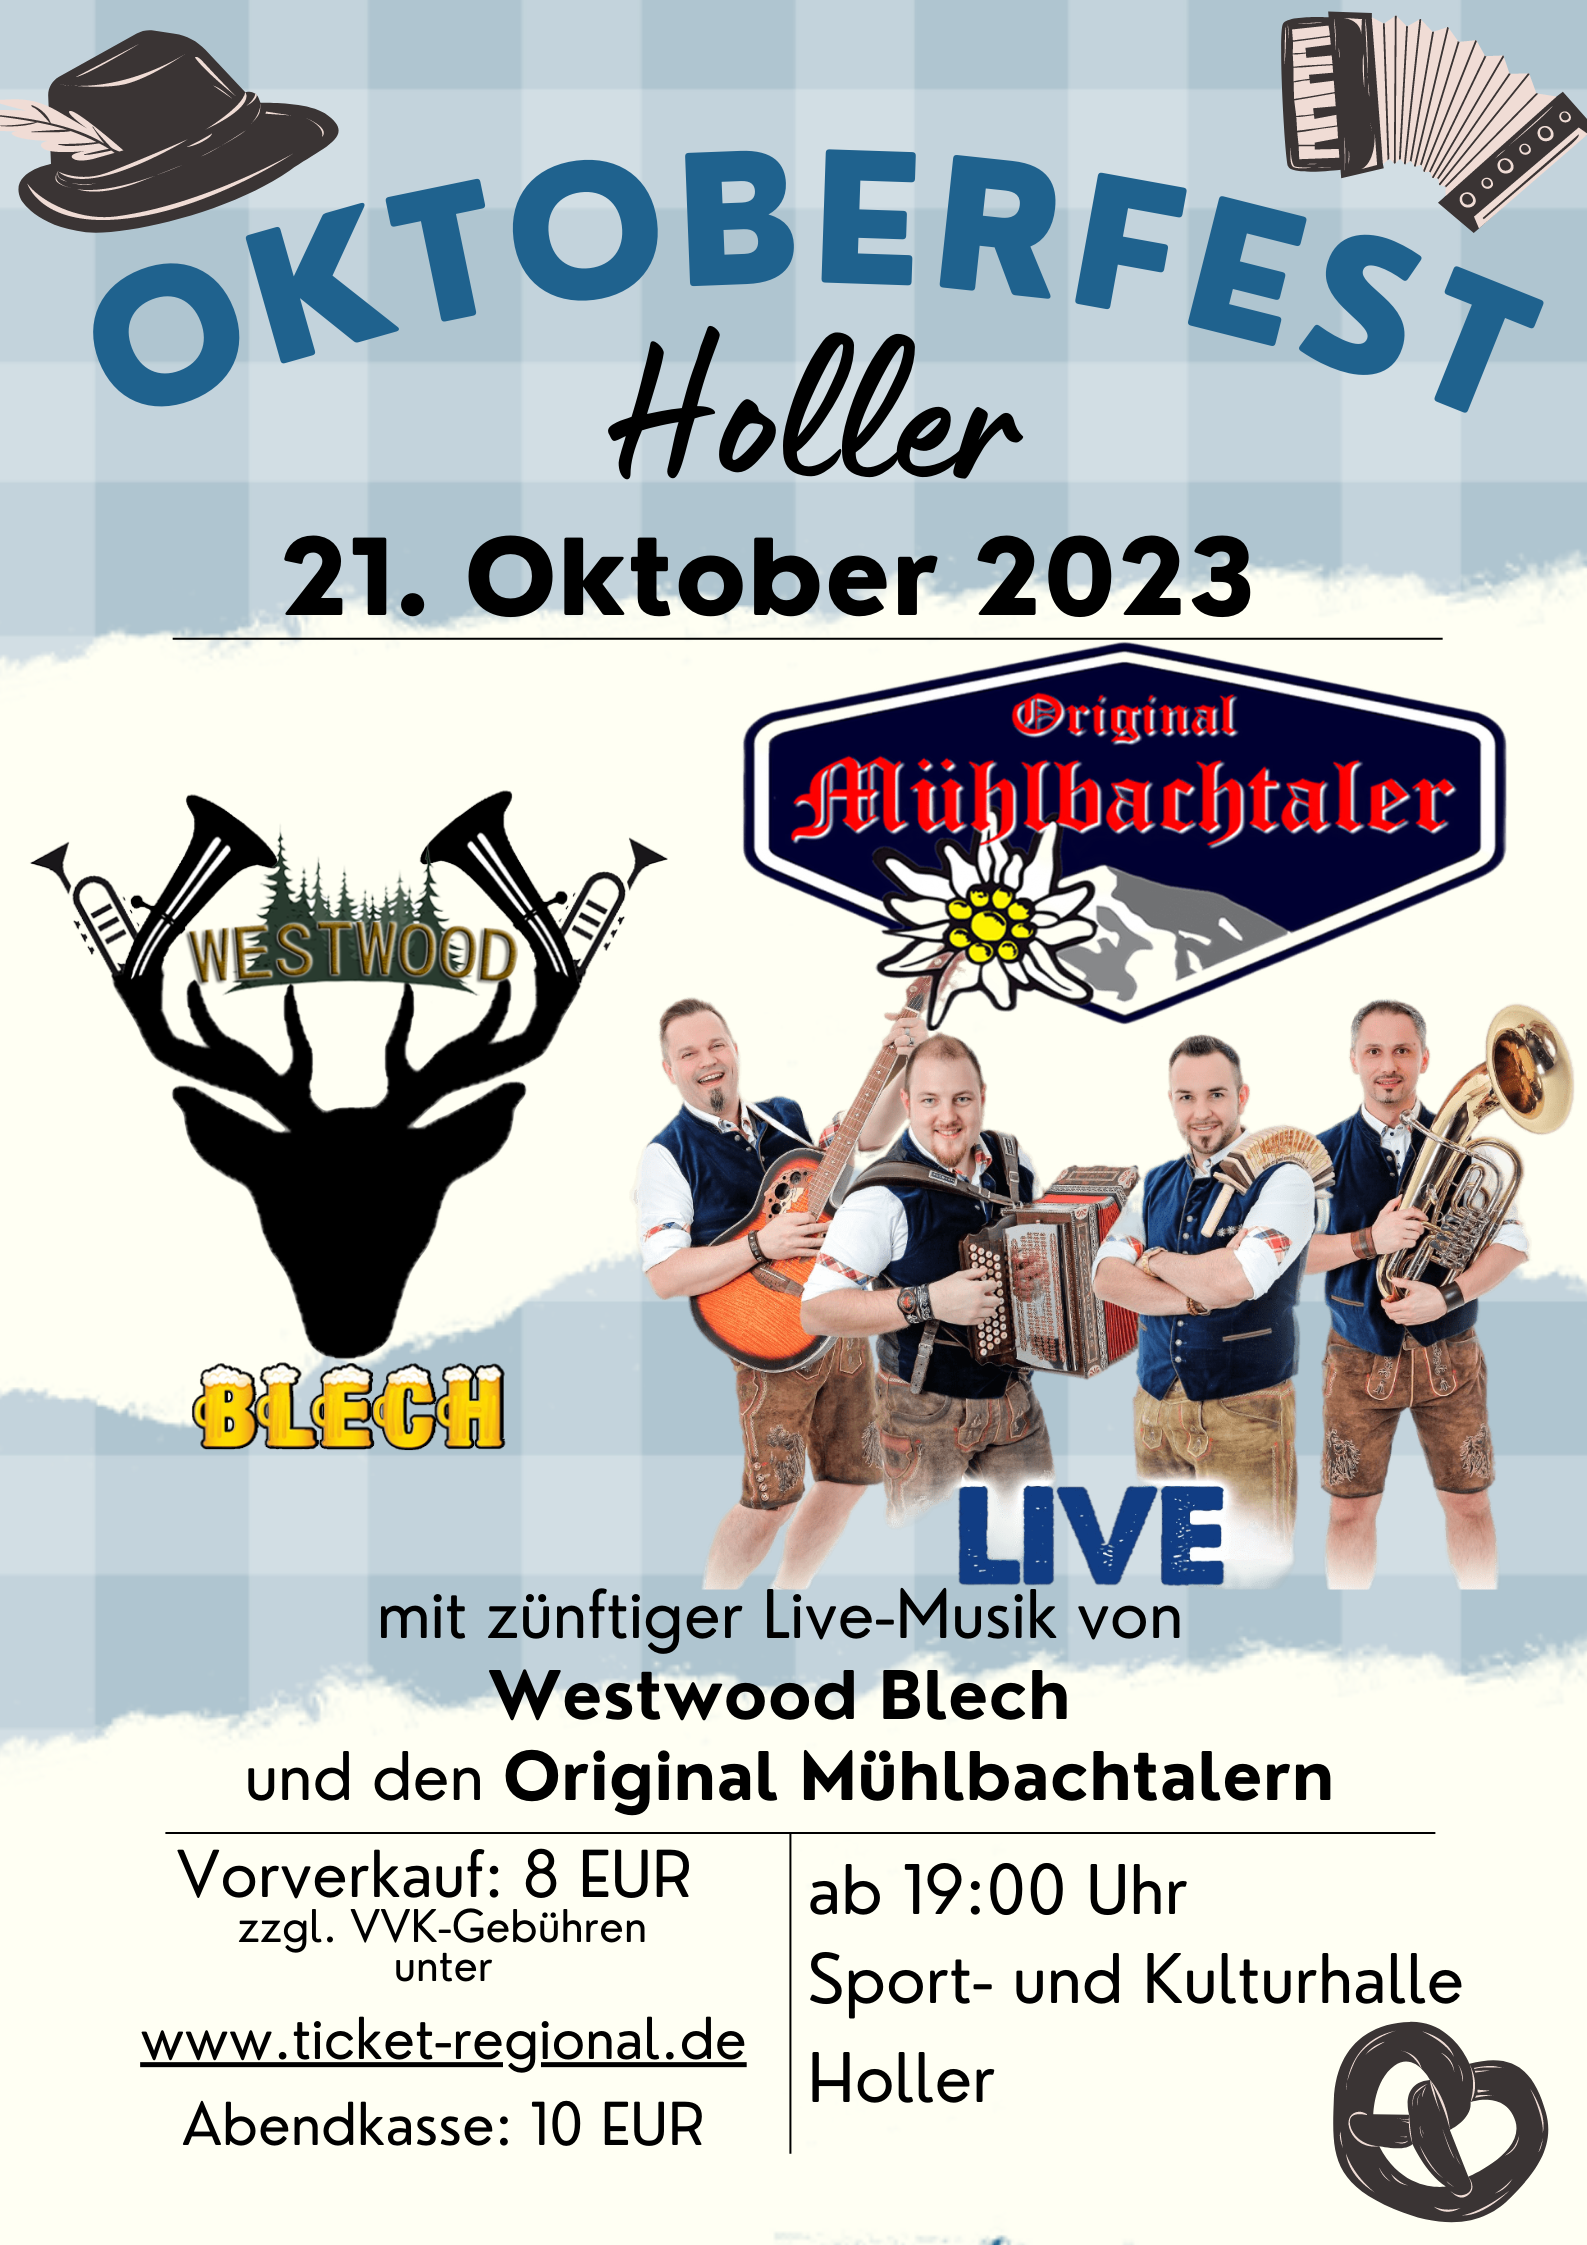 Oktoberfest Holler, 21. Oktober 2023